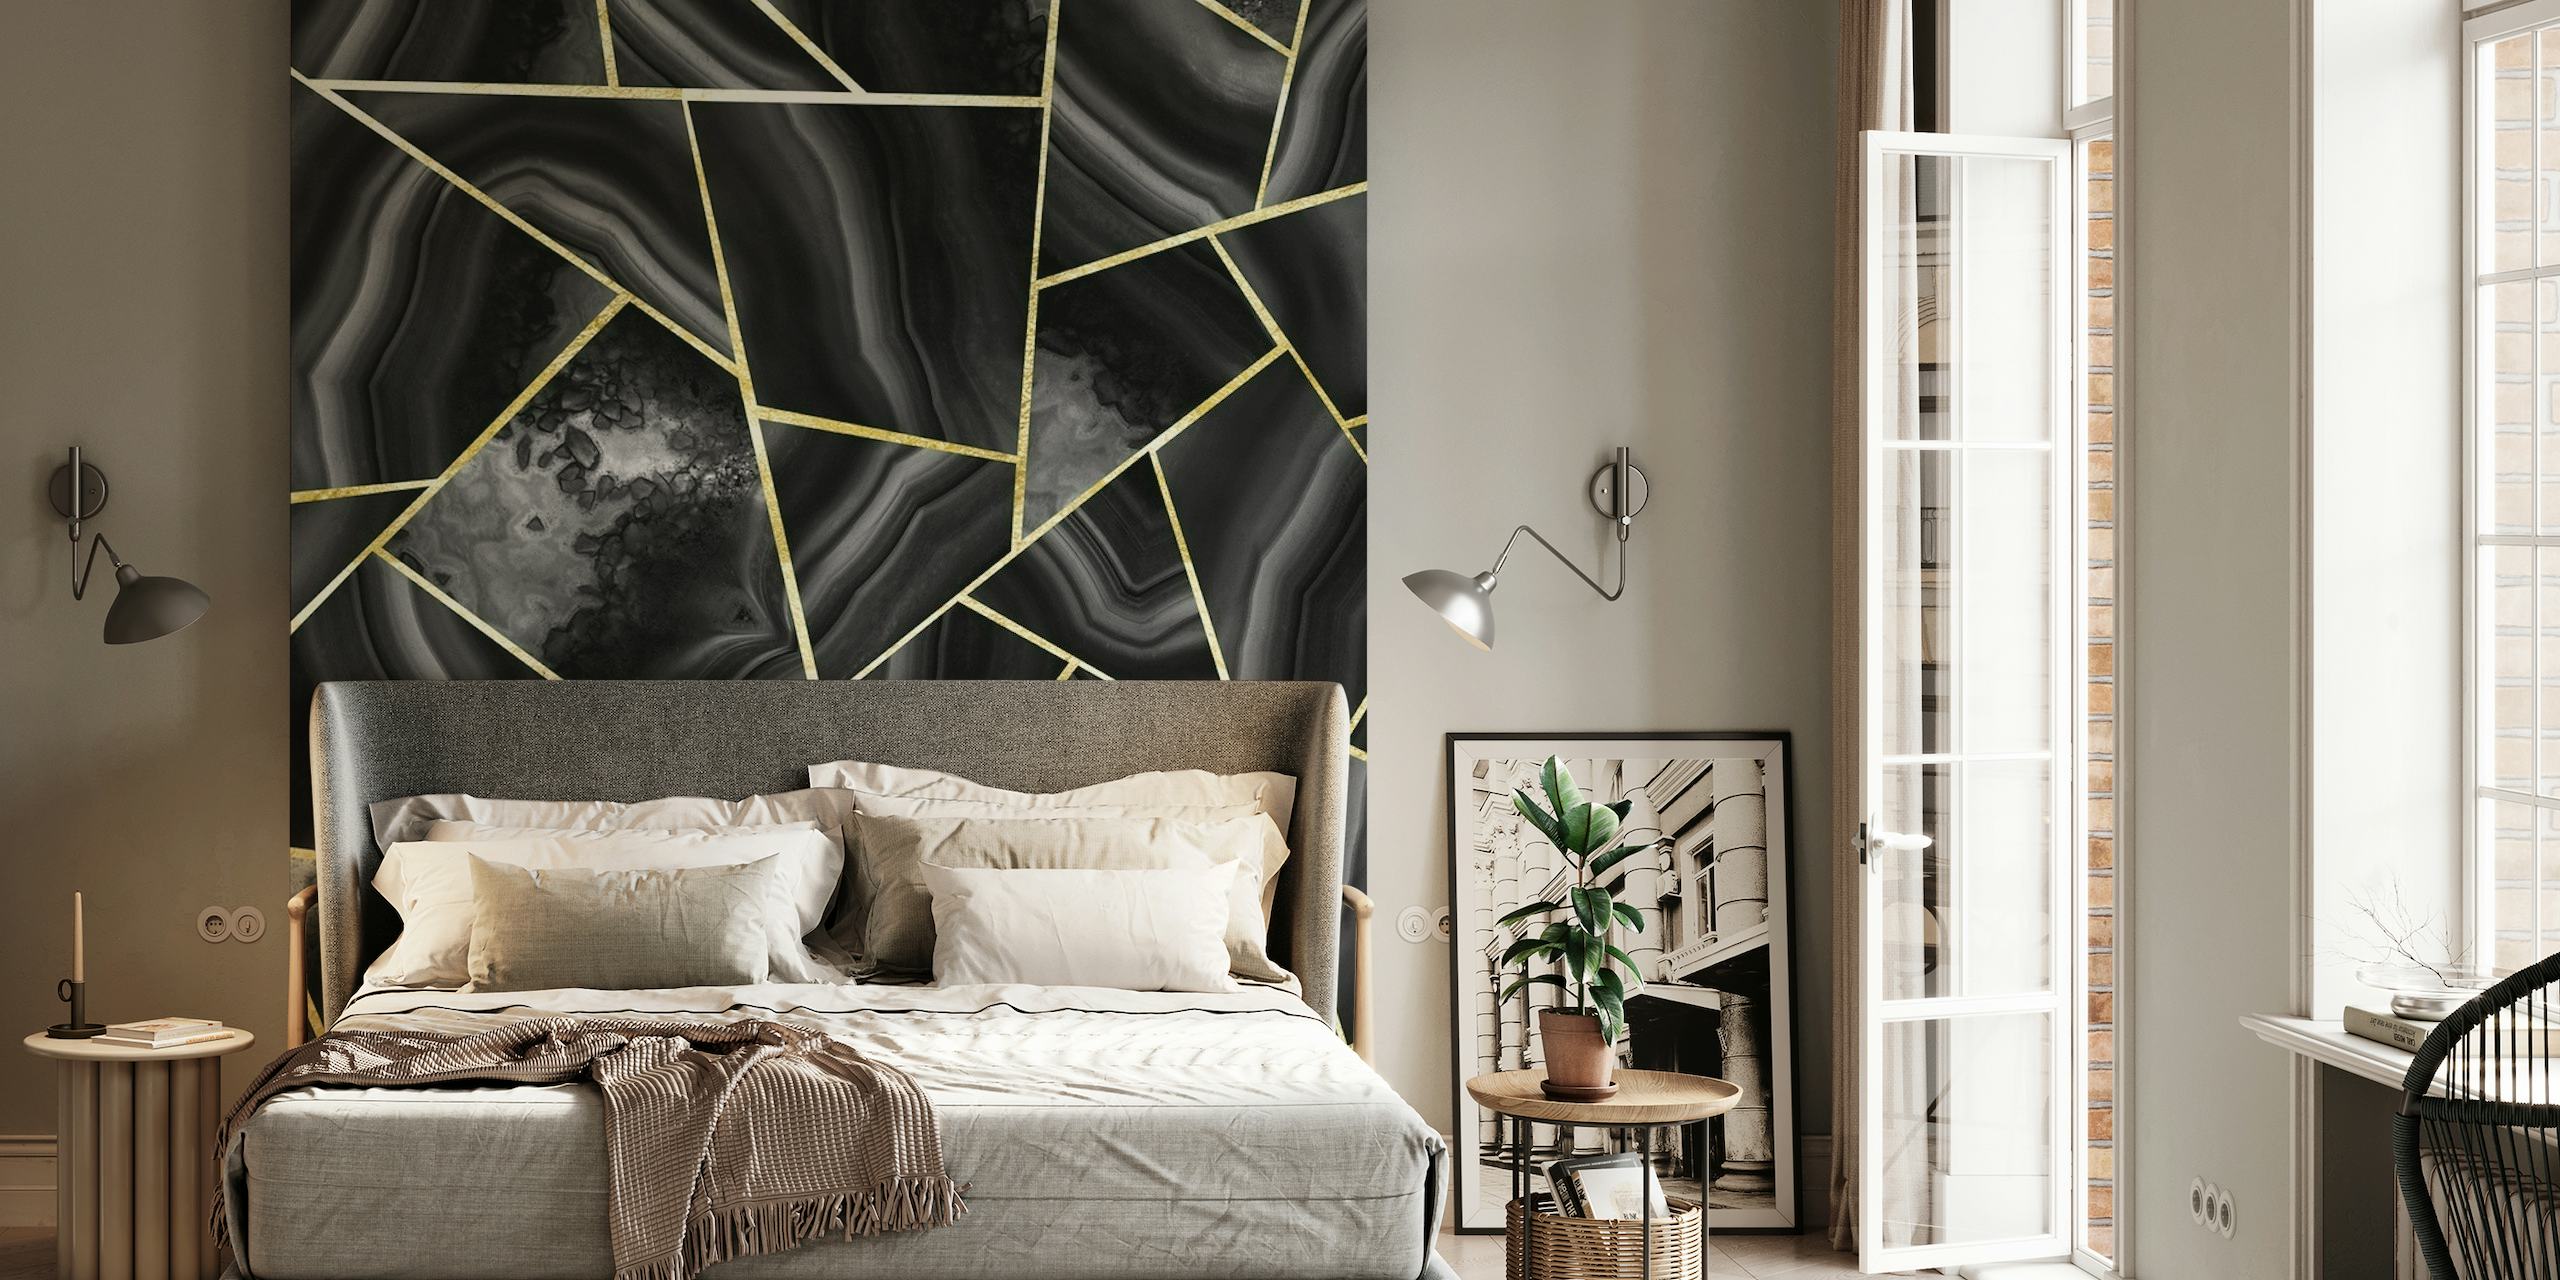 Mural de parede inspirado em ágata preta e dourada com linhas geométricas